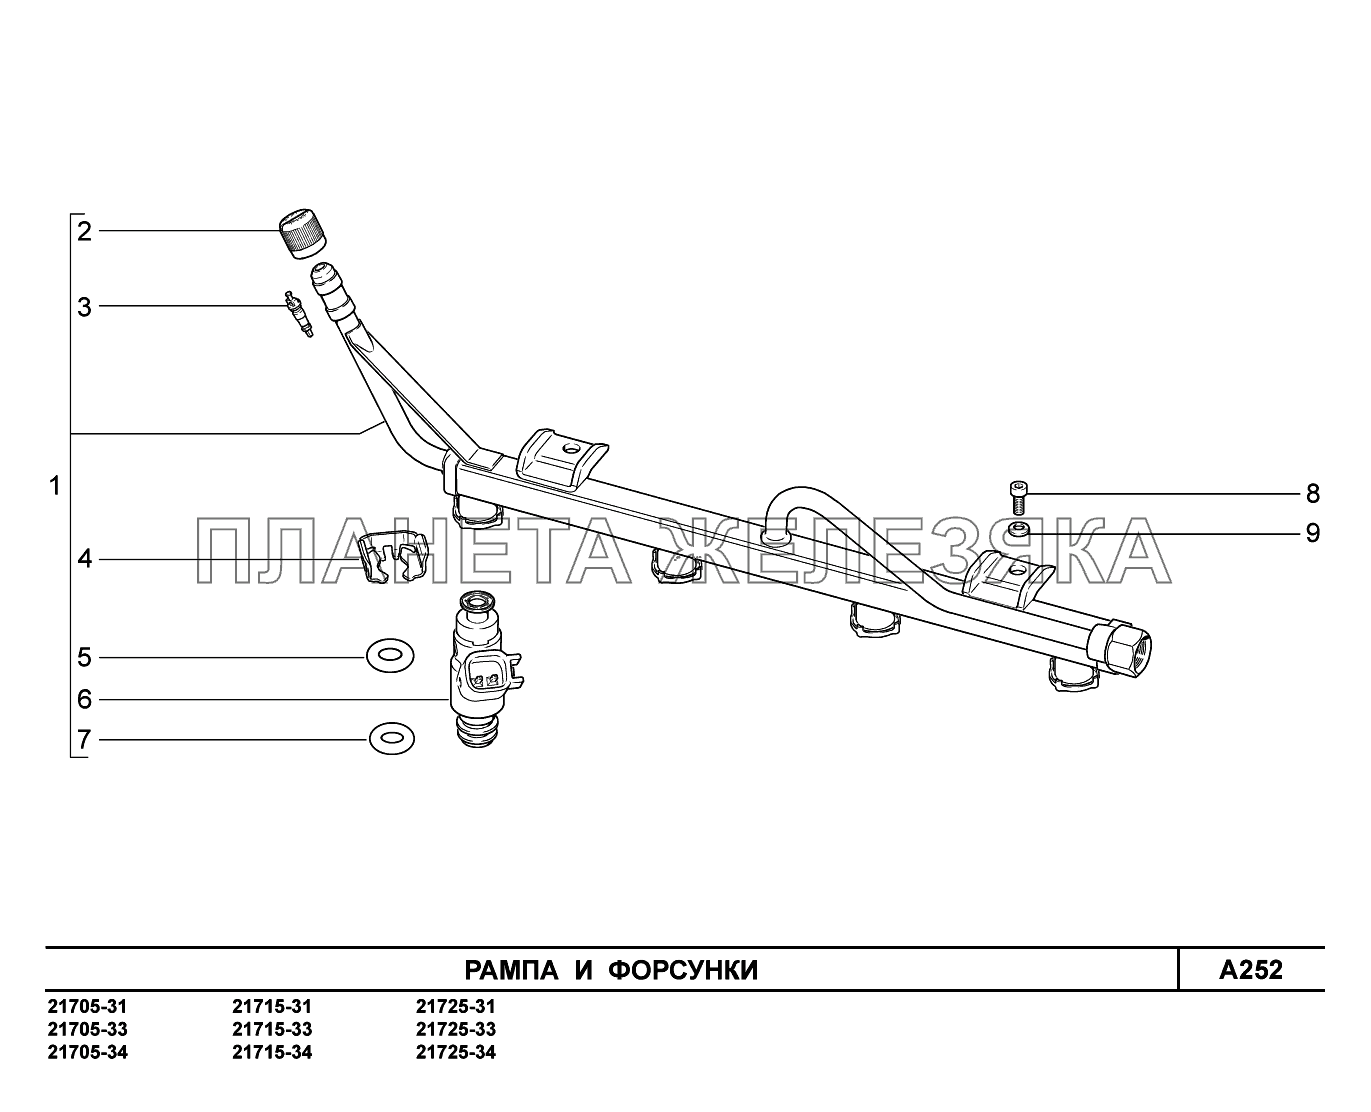 A252. Рампа и форсунки ВАЗ-2170 